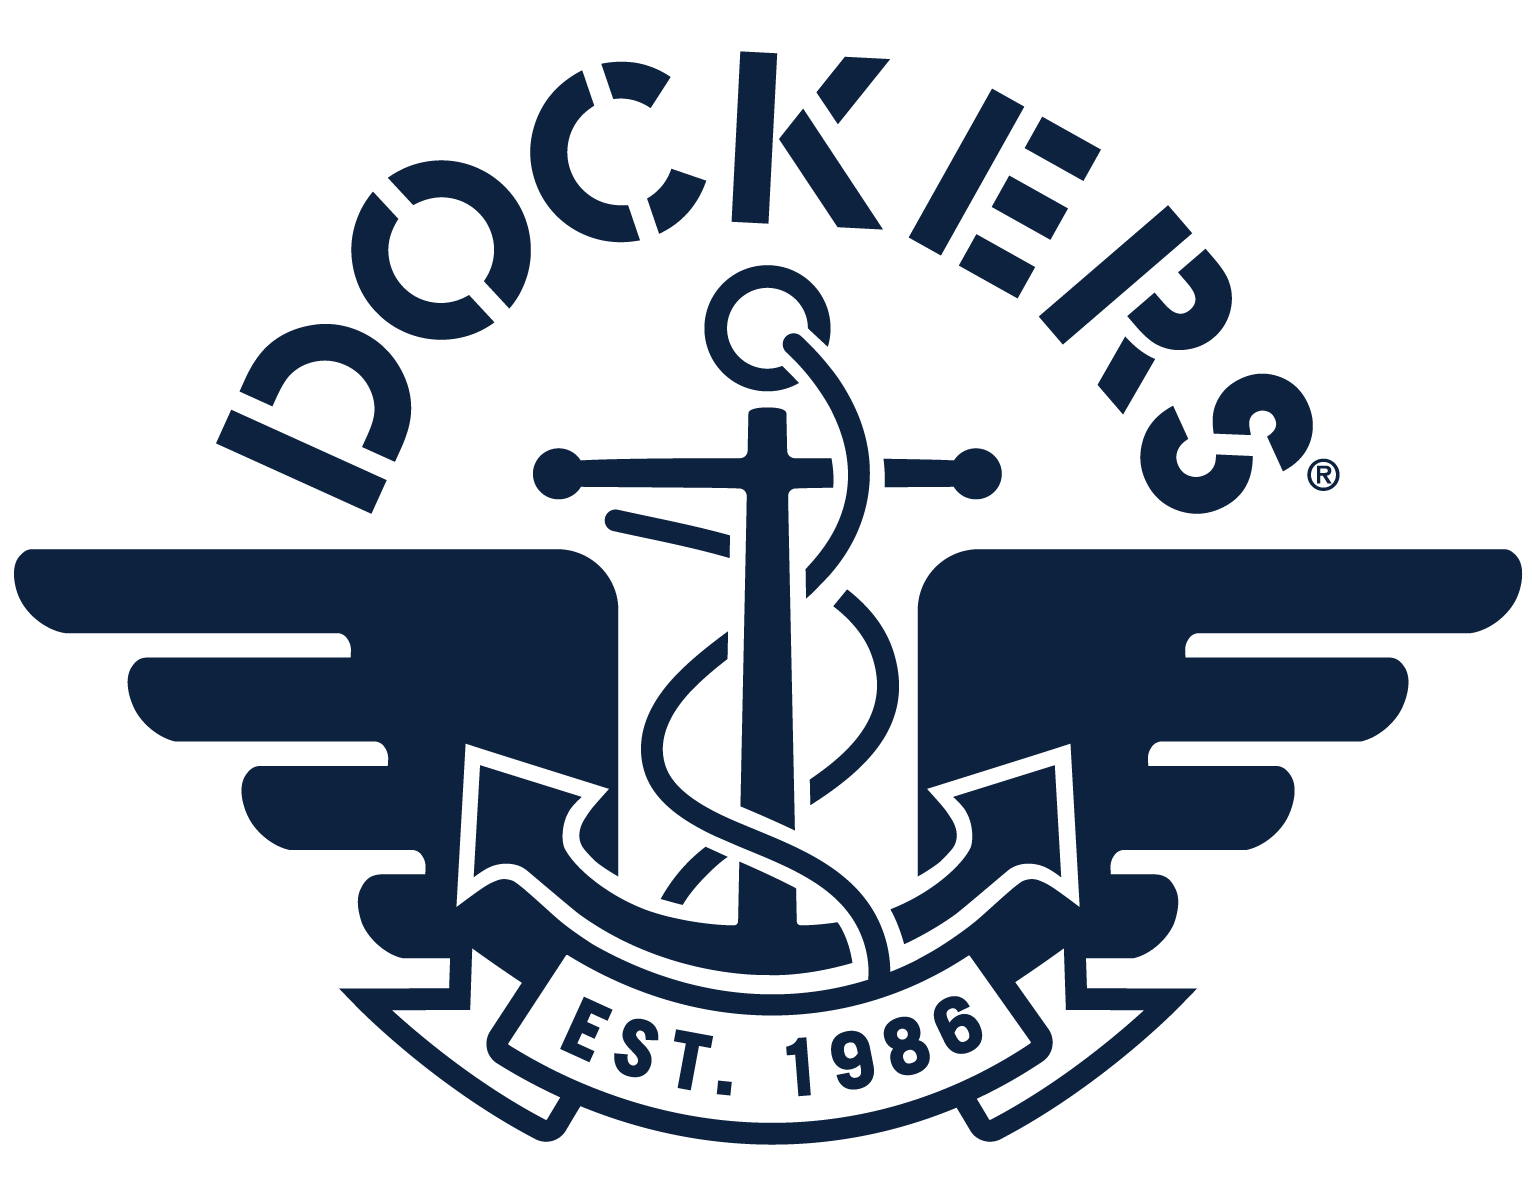 Docker's logo